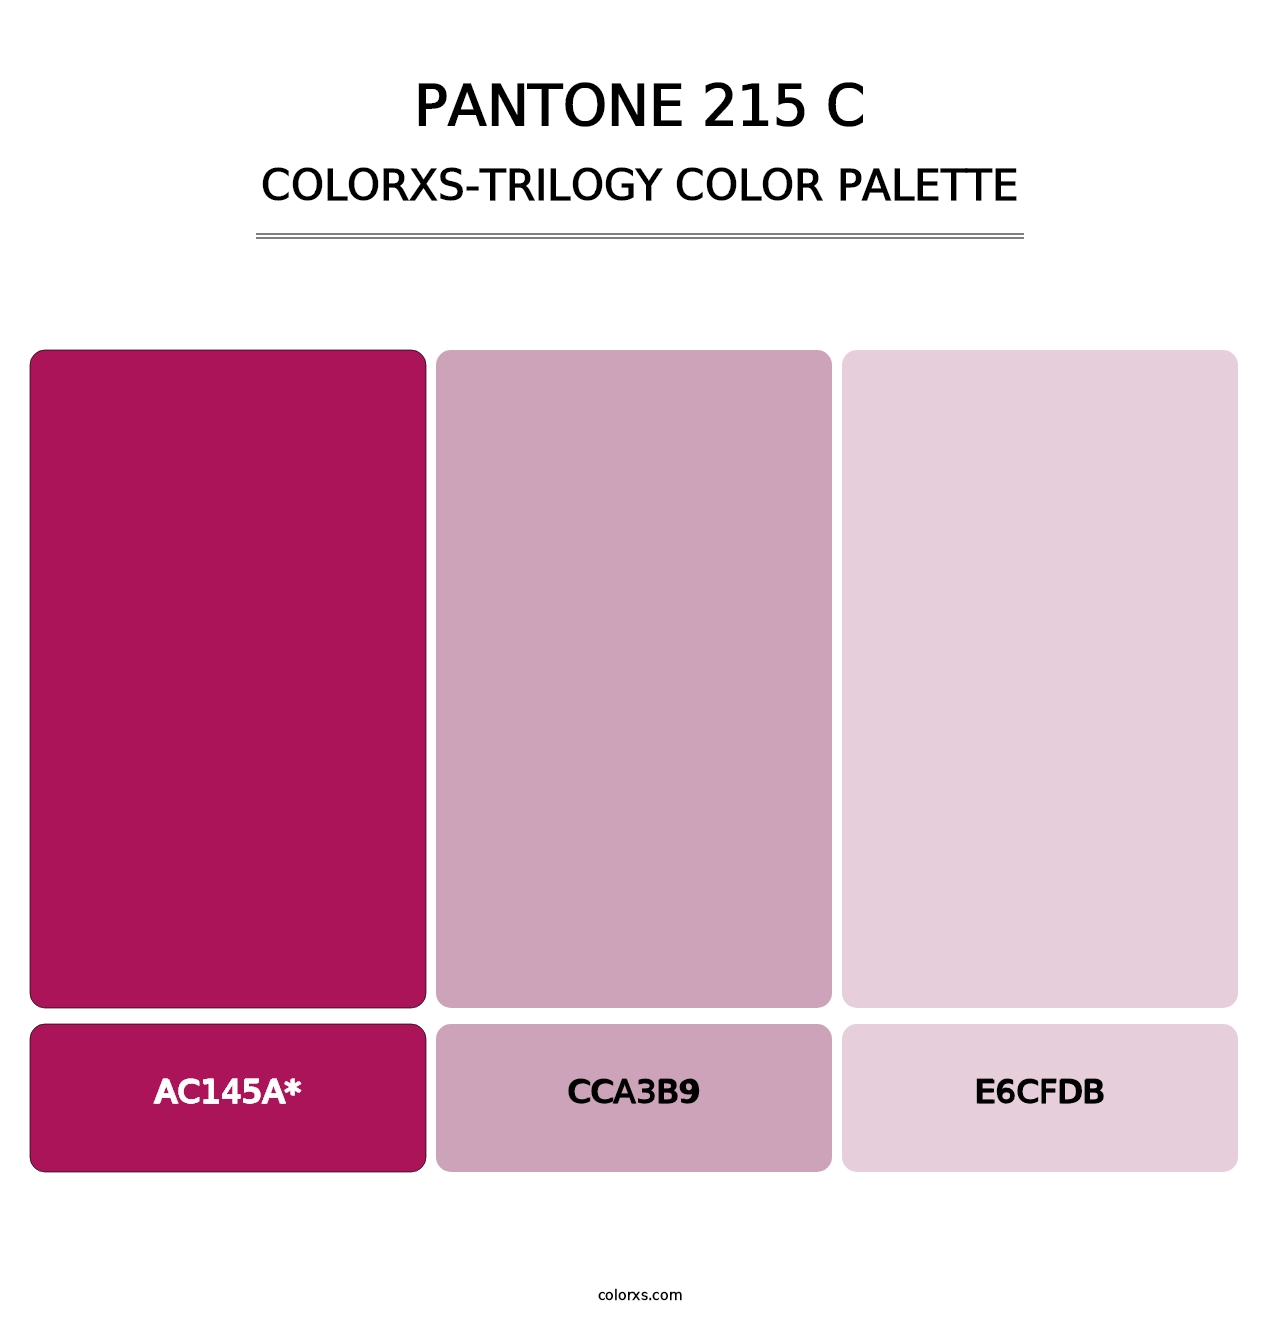 PANTONE 215 C - Colorxs Trilogy Palette